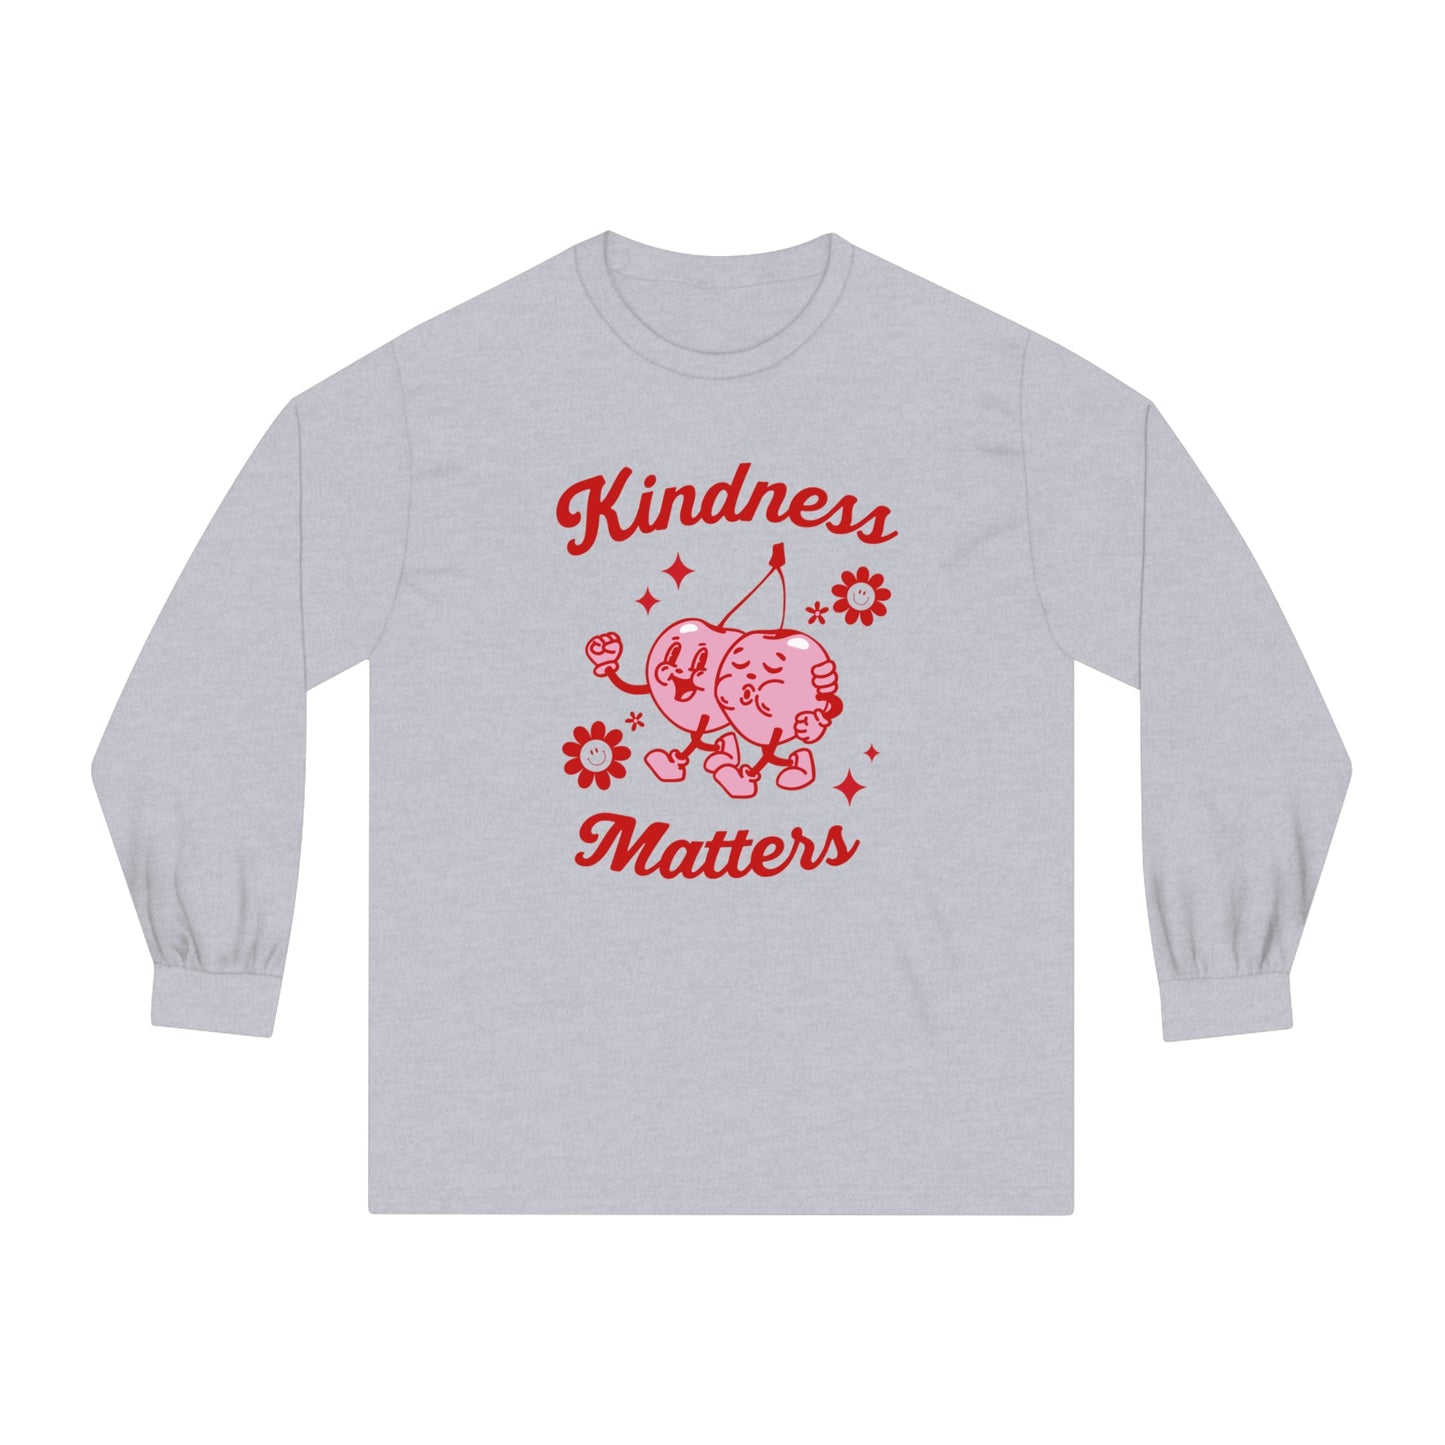 Kindness Matters Long Sleeve T-Shirt